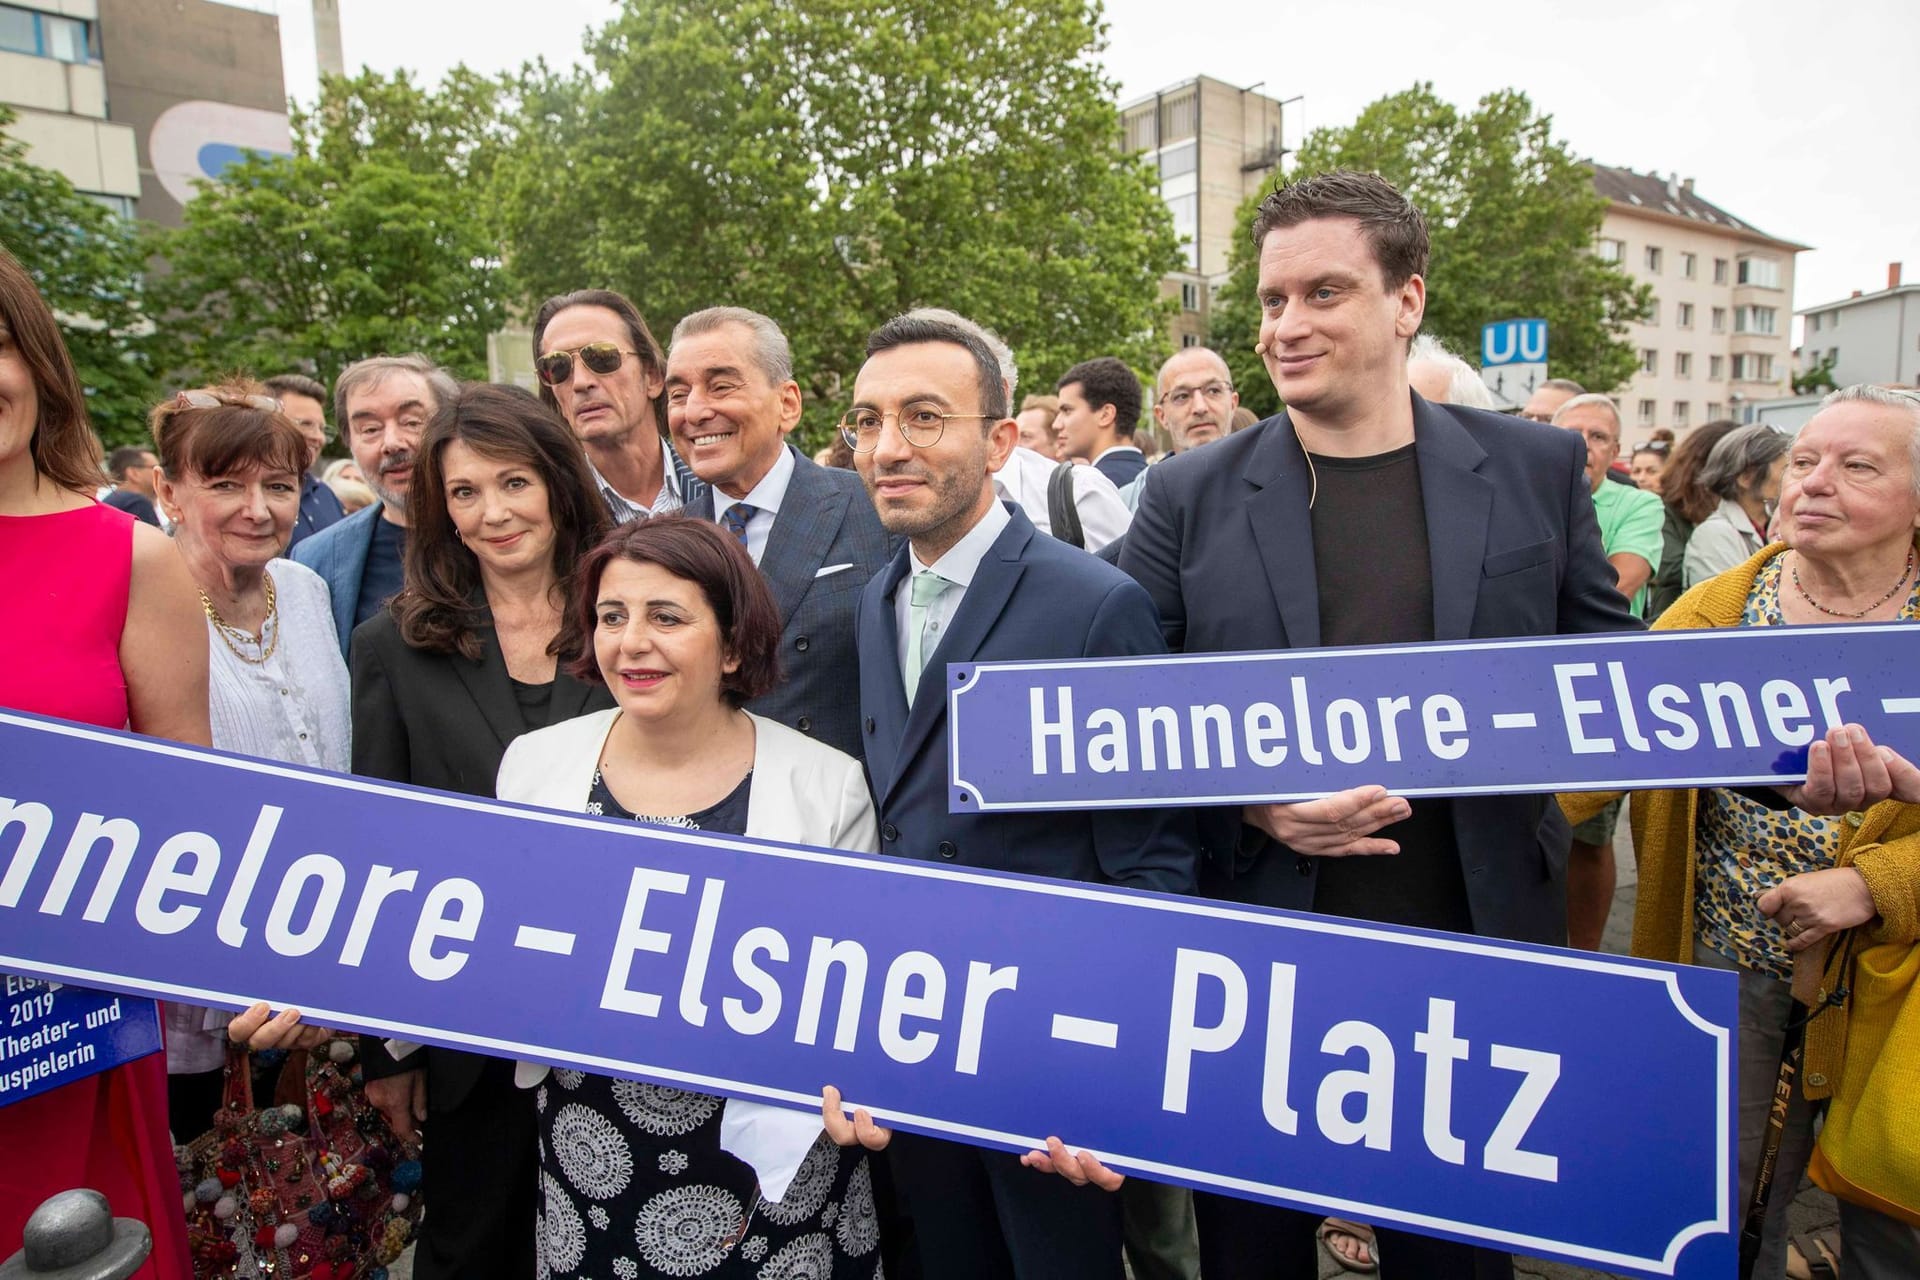 Hannelore-Elsner-Platz in Frankfurt eingeweiht